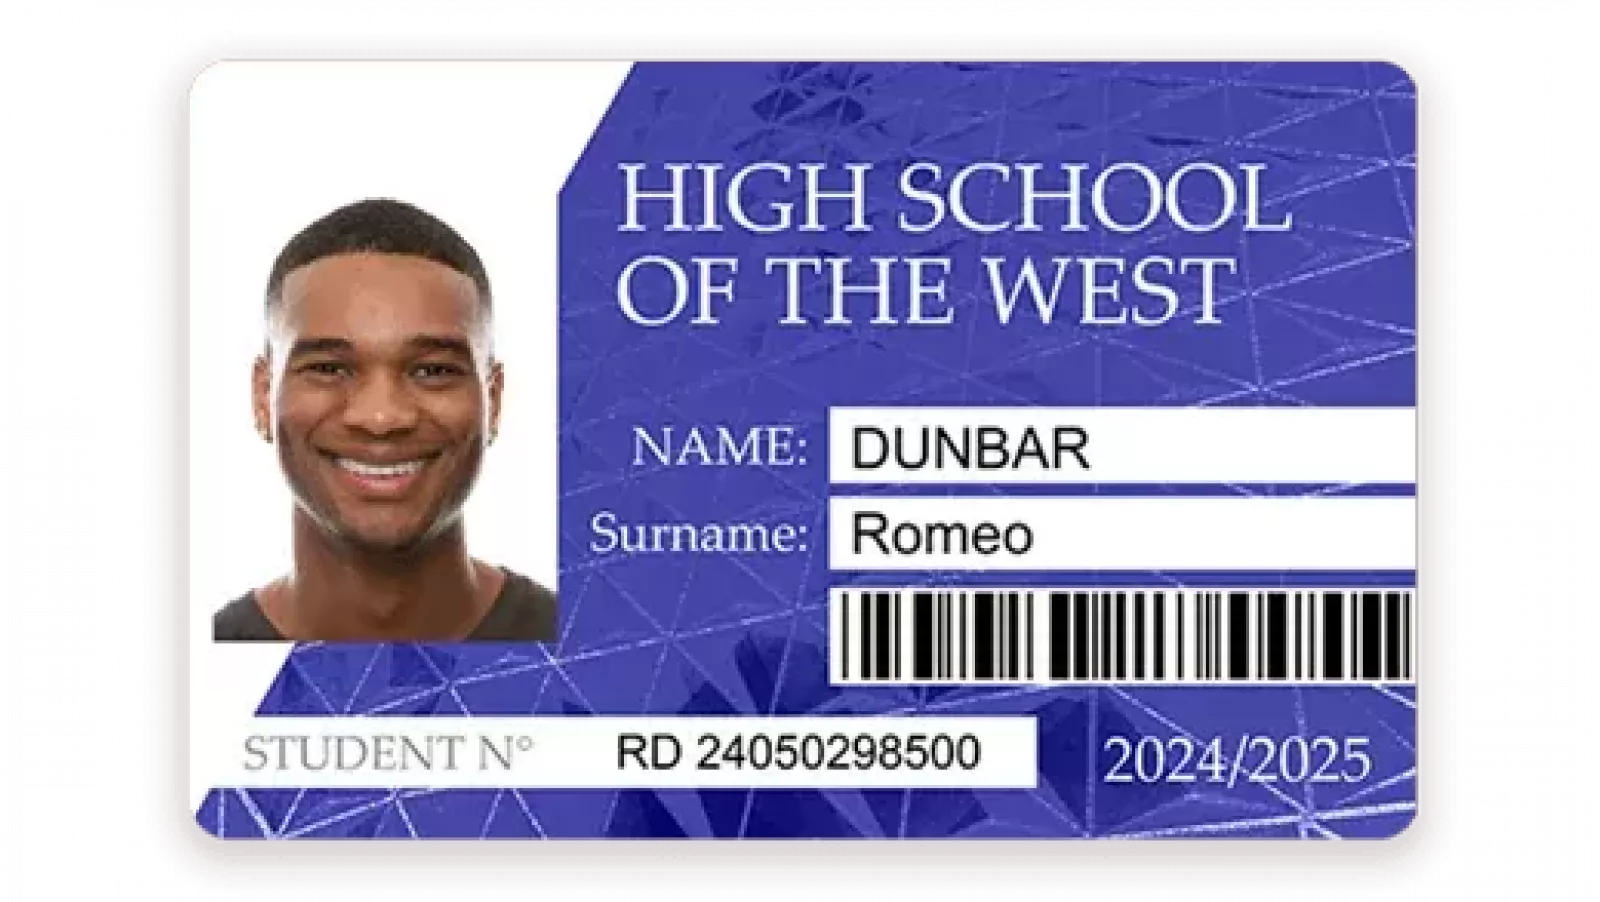 High School ID CARD